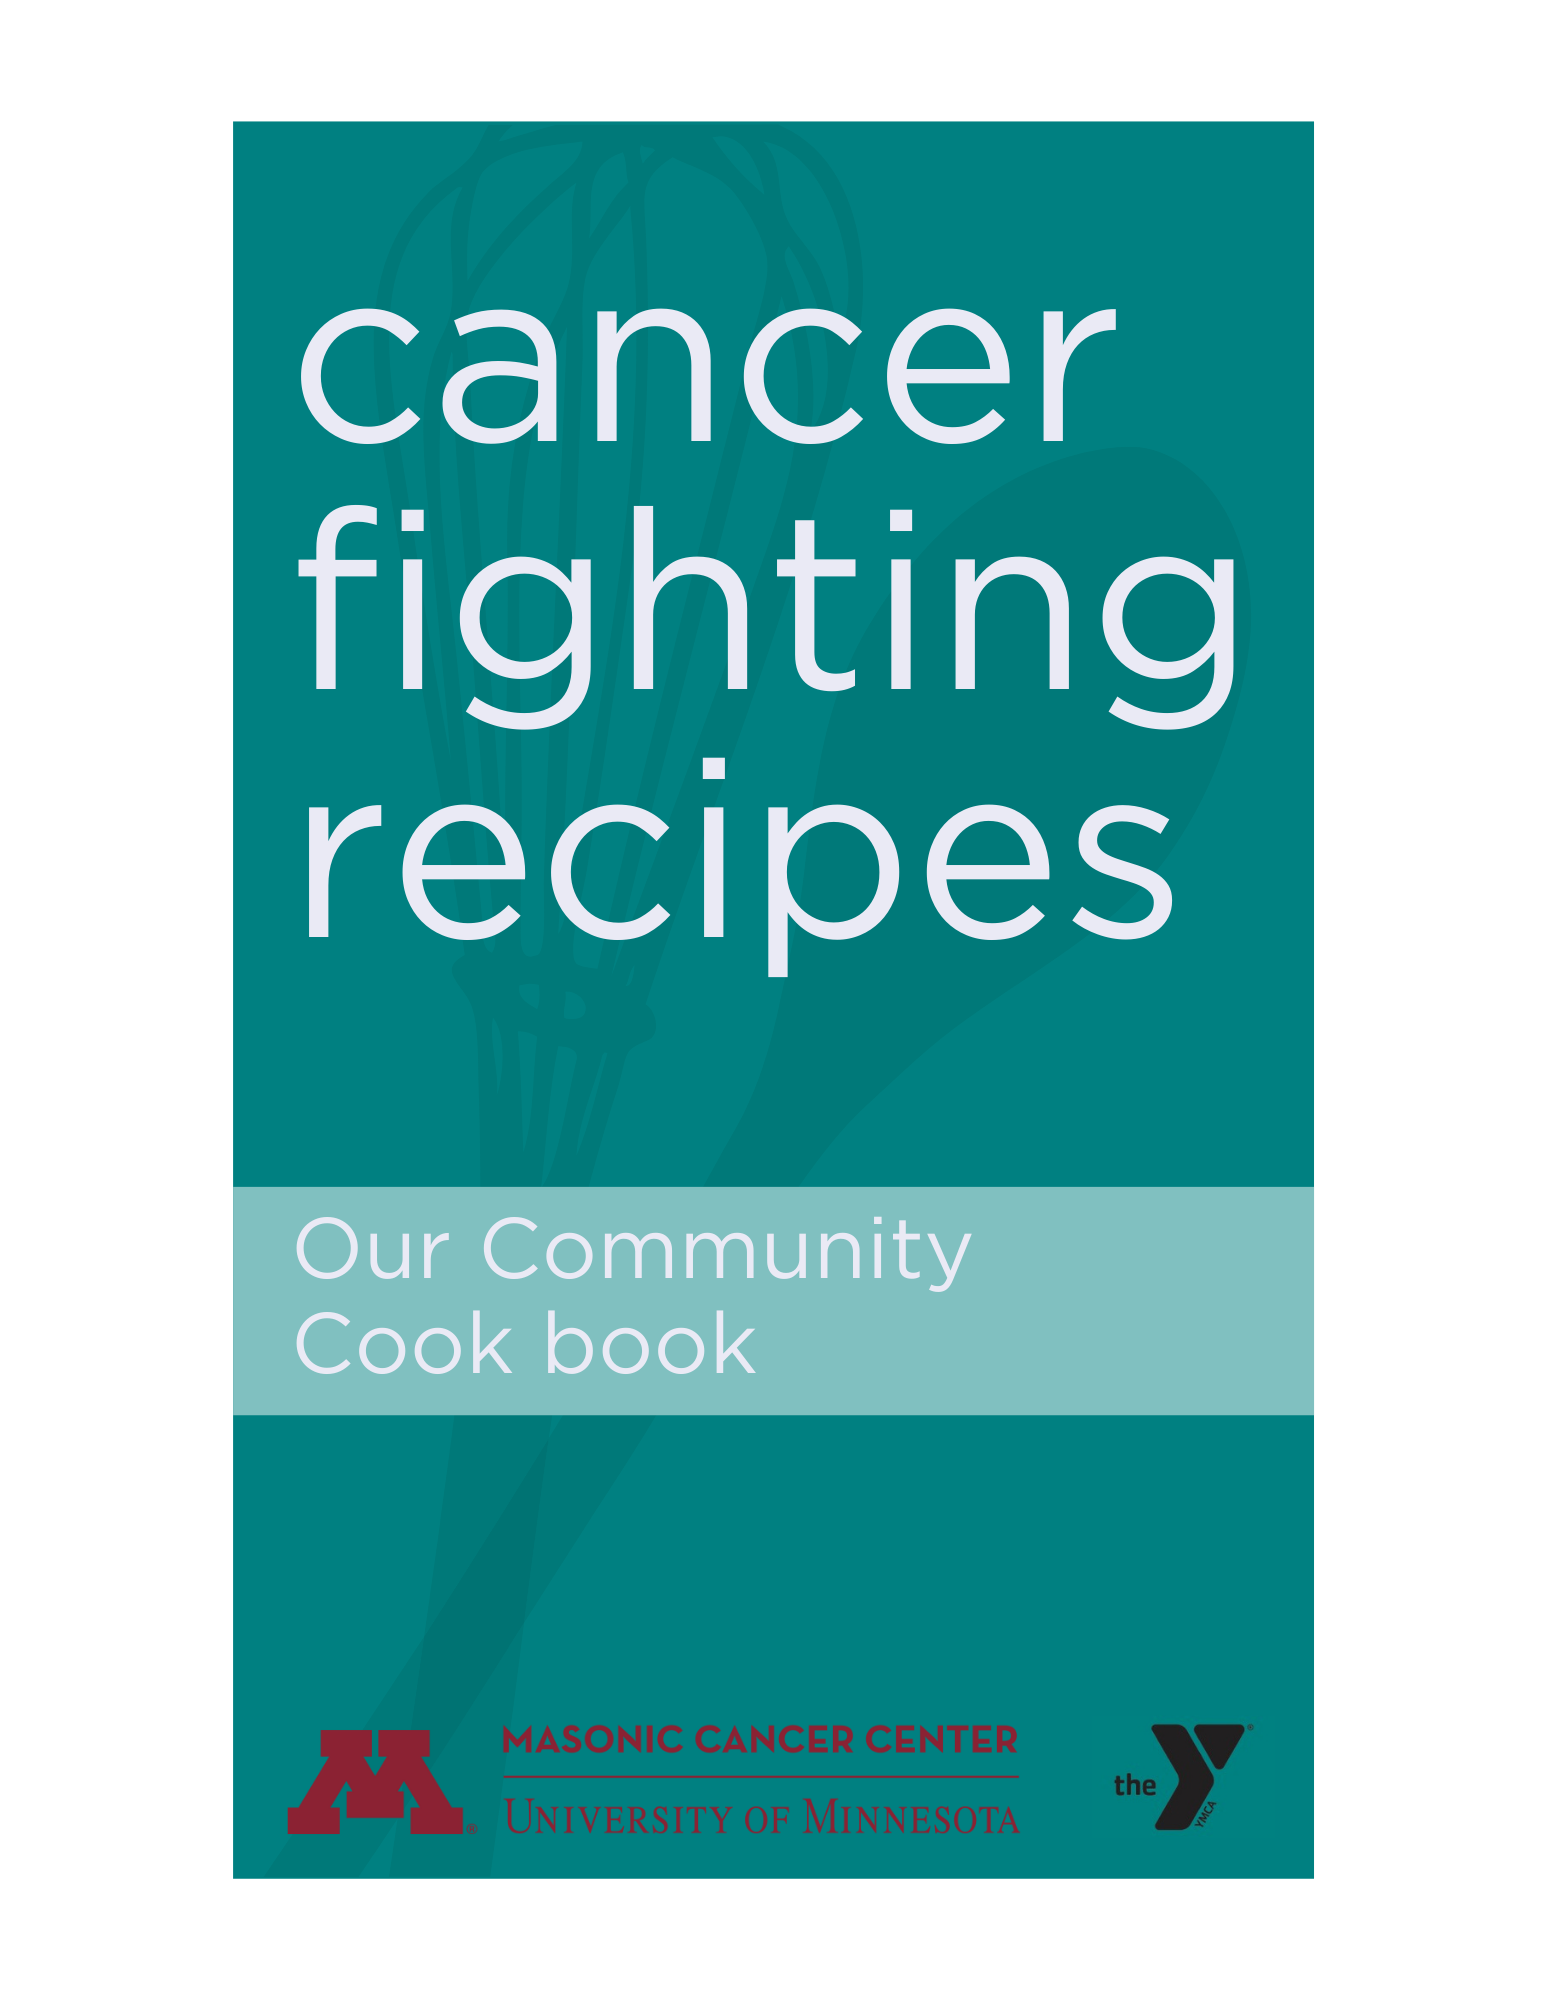 Cancer Cookbook